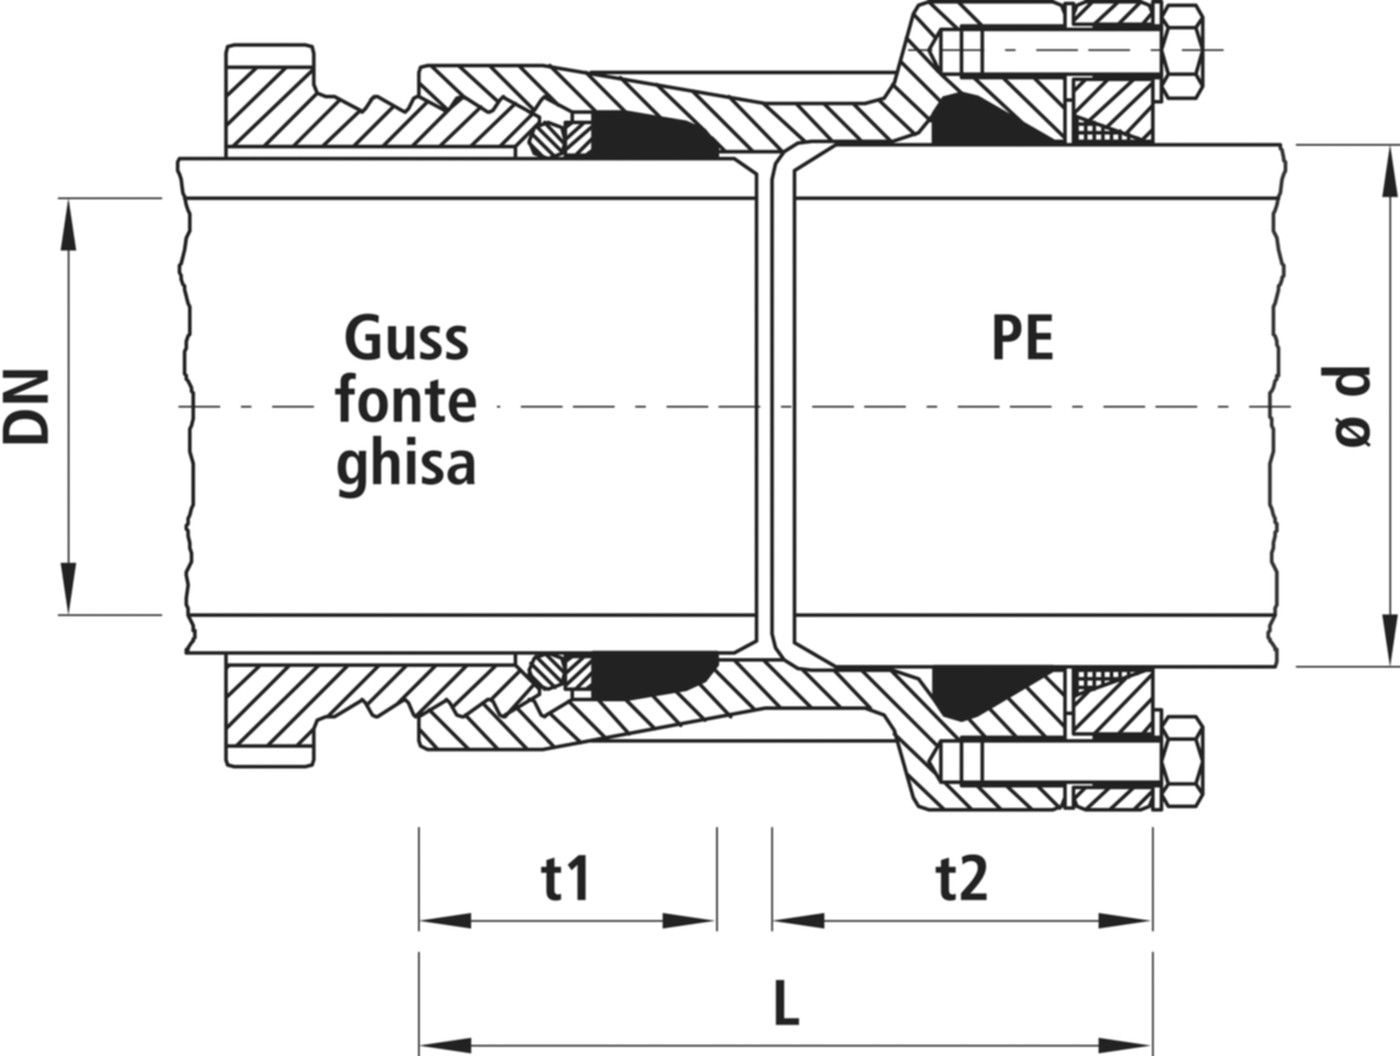 Verbinder Guss/PE, für Wasser 7230 DN 100 / d 160mm - Hawle System 2000